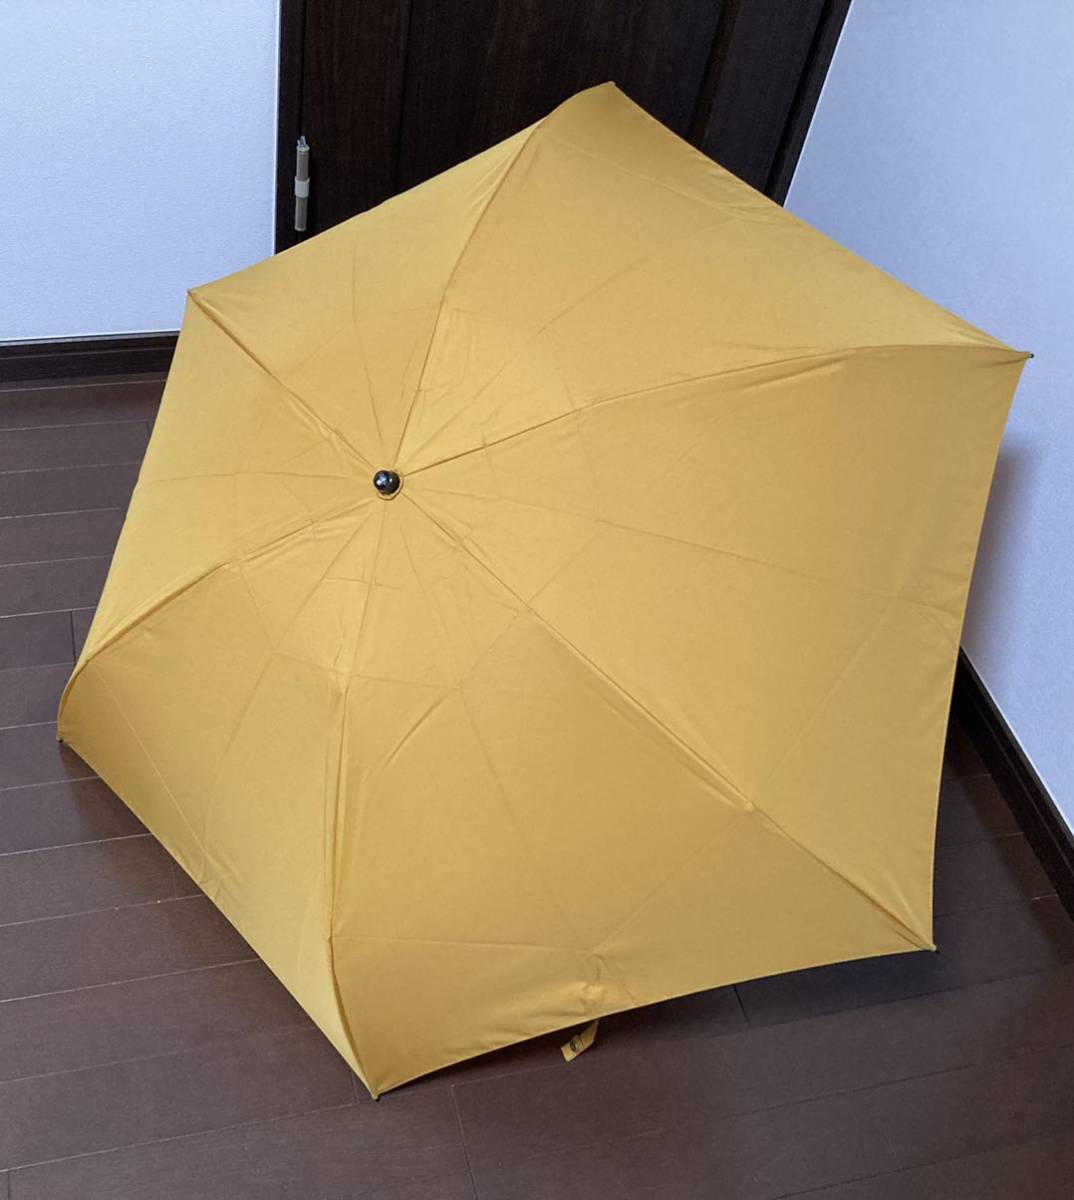 売れ済クリアランス ヴィヴィアン 00s 〜 90s ウエストウッド 傘 折り畳み傘 スクイーグル 傘